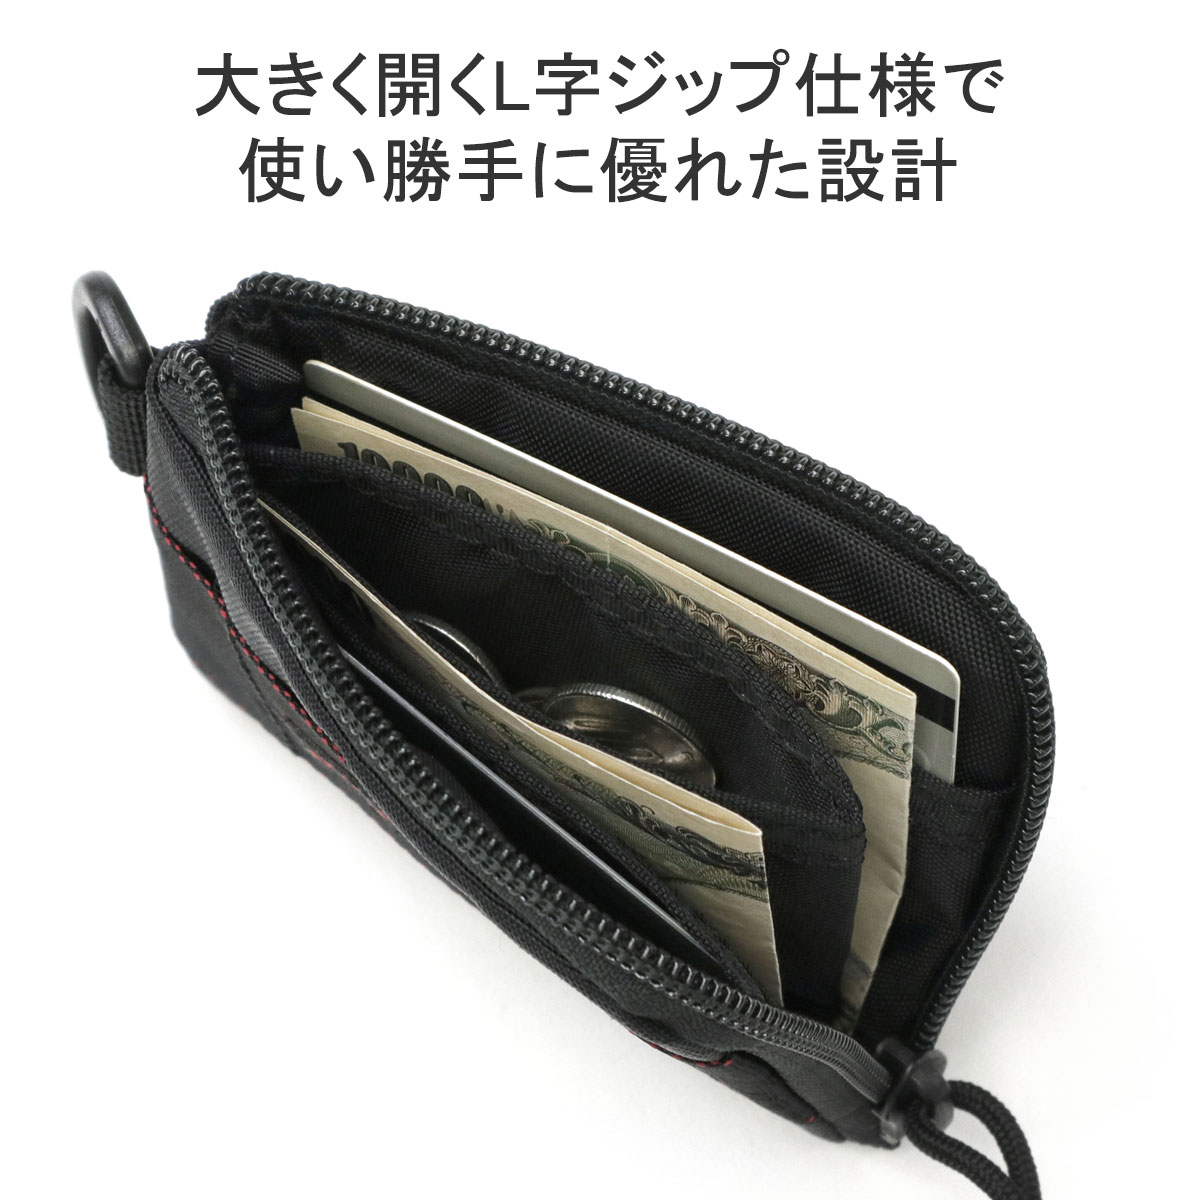 最大36% 5/9限定 日本正規品 ブリーフィング 財布 メンズ 